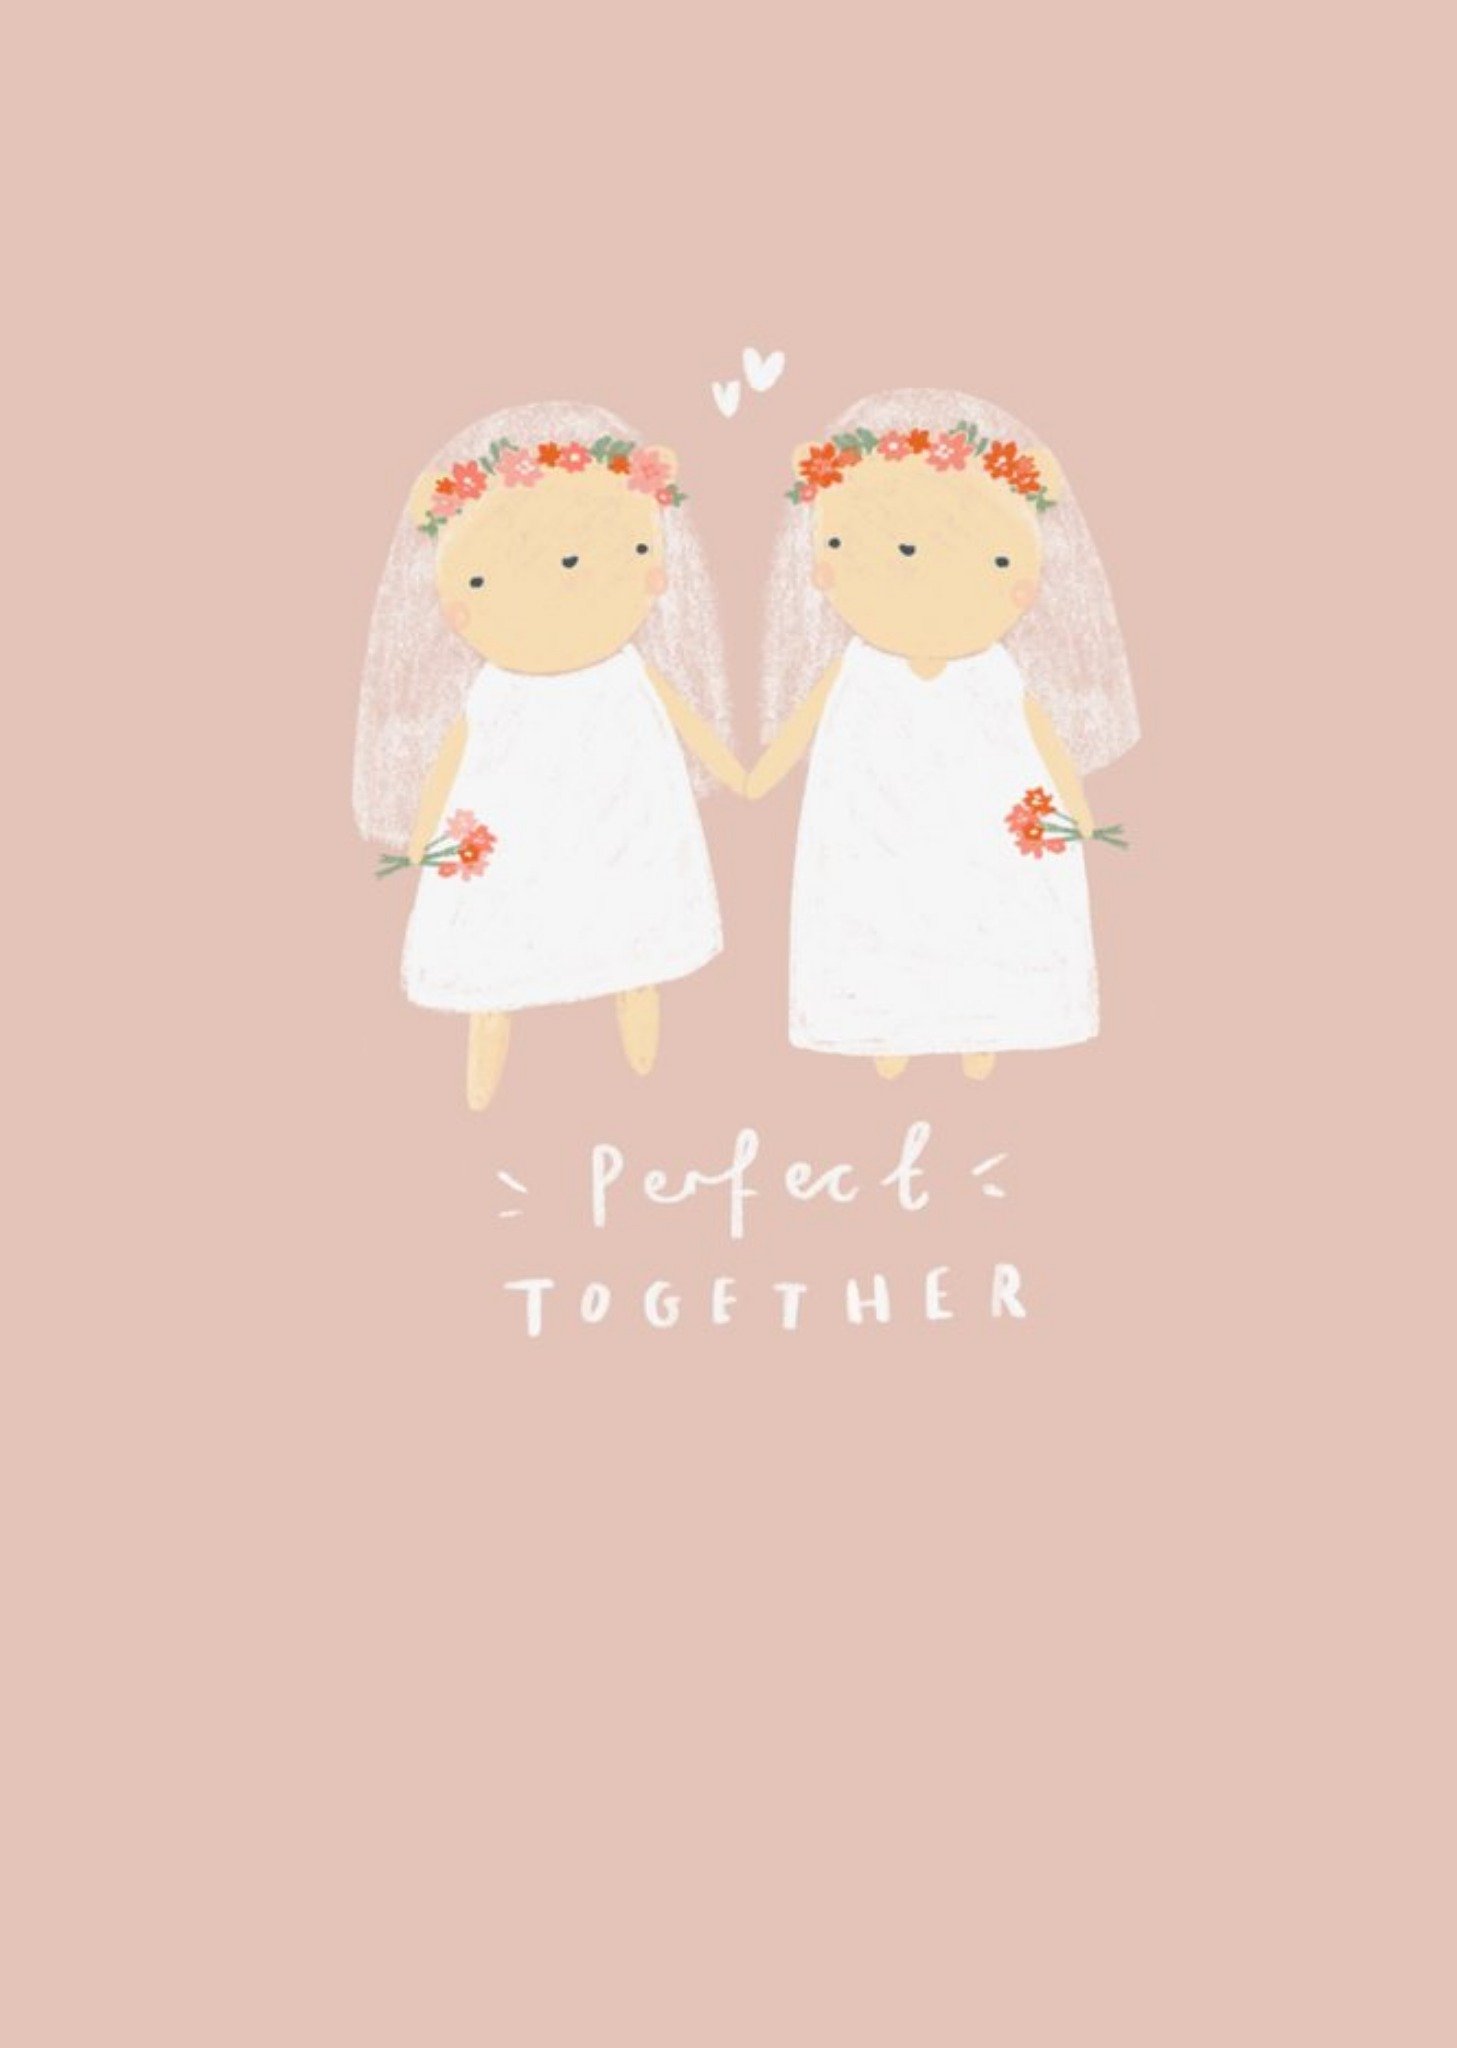 Love Hearts Beth Fletcher Illustrations Cute LGBTQ+ Female Wedding Day Bear Card Ecard